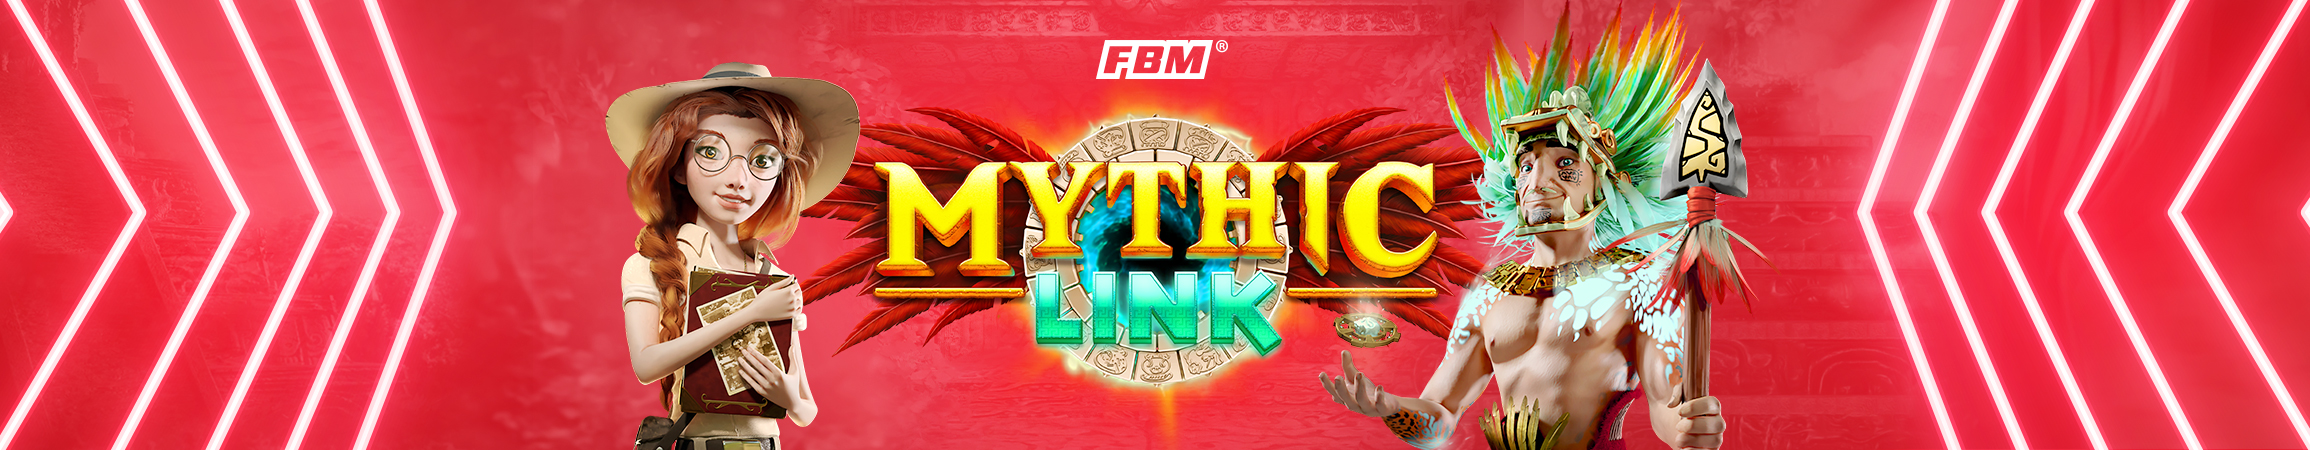 FBM® instala Mythic Link® en el Casino Filipino Binondo